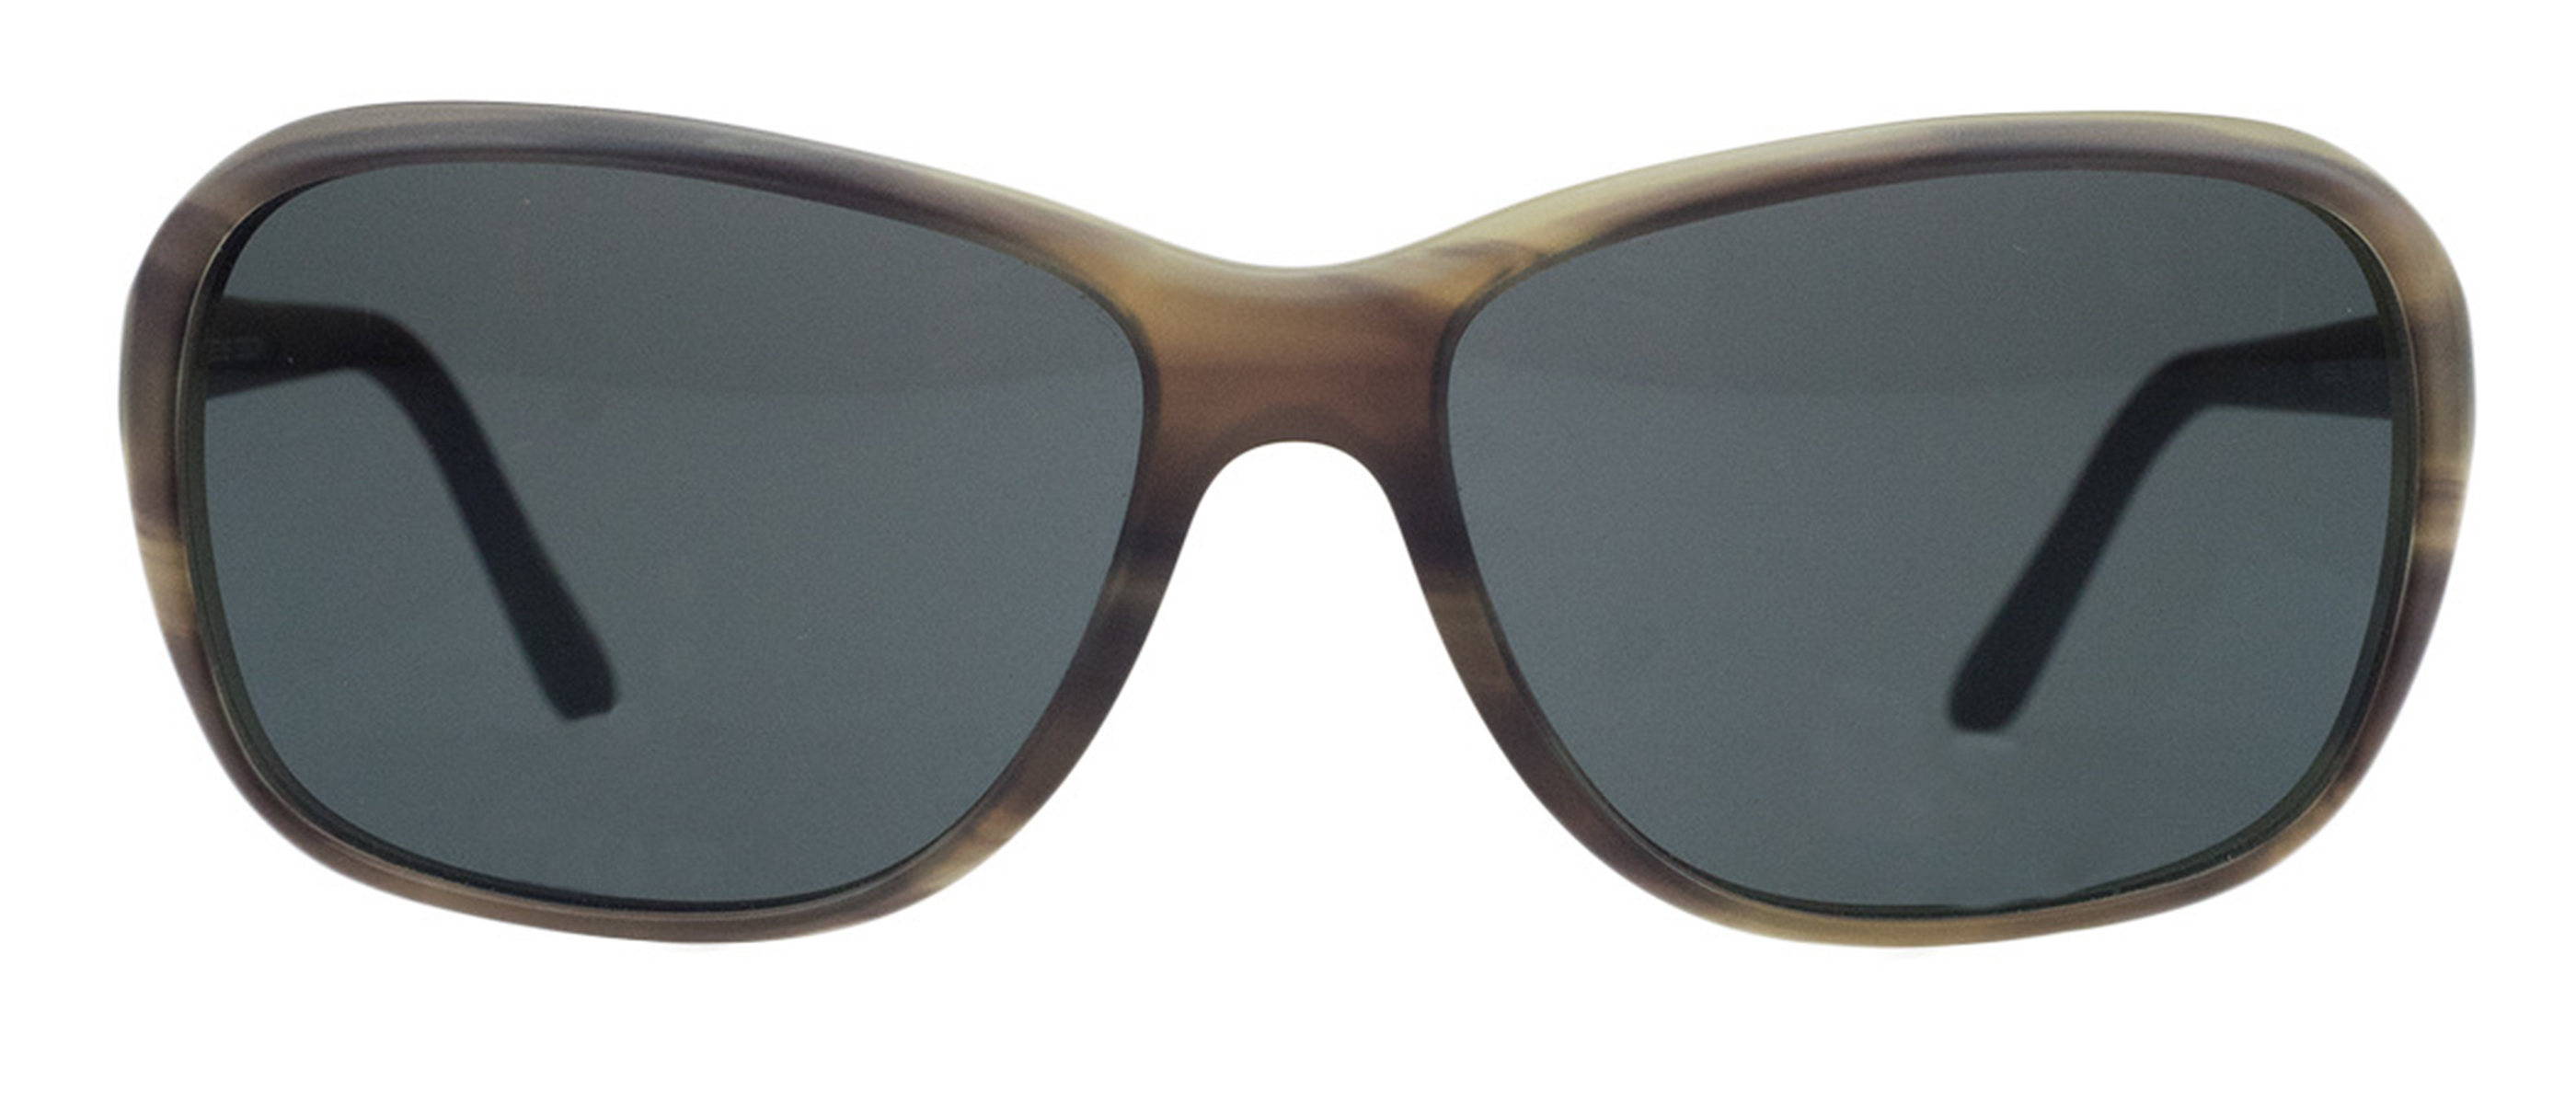 Porsche P8558-B Brown Horn Rectangular Sunglasses - image 2 of 5